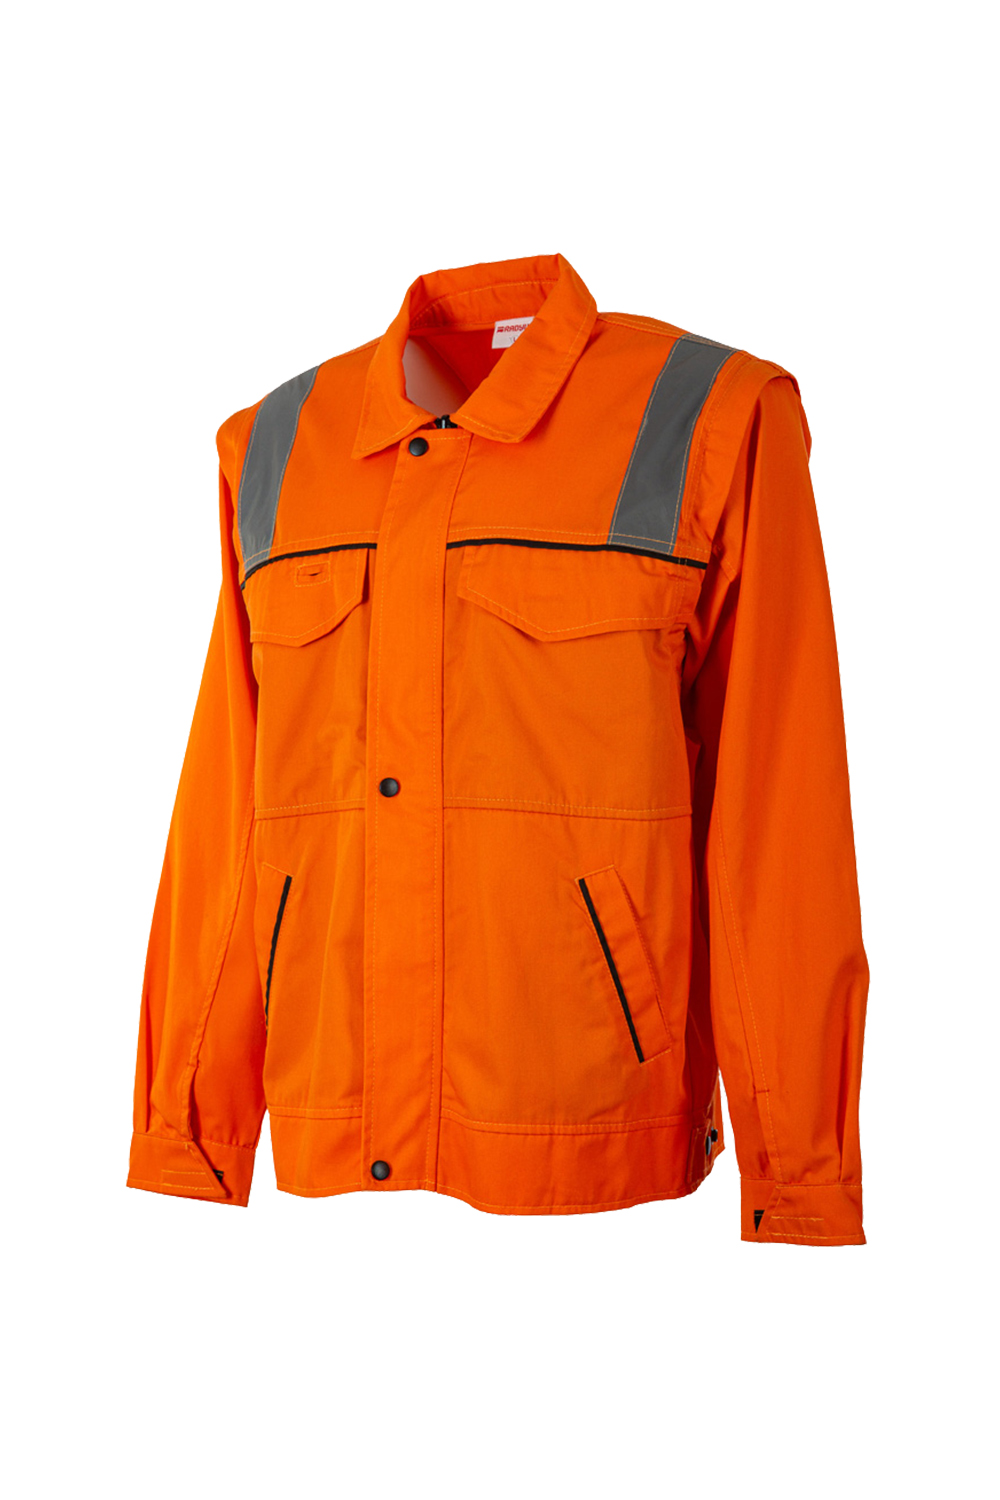 Work Jacket / Work Jackets / Workwear